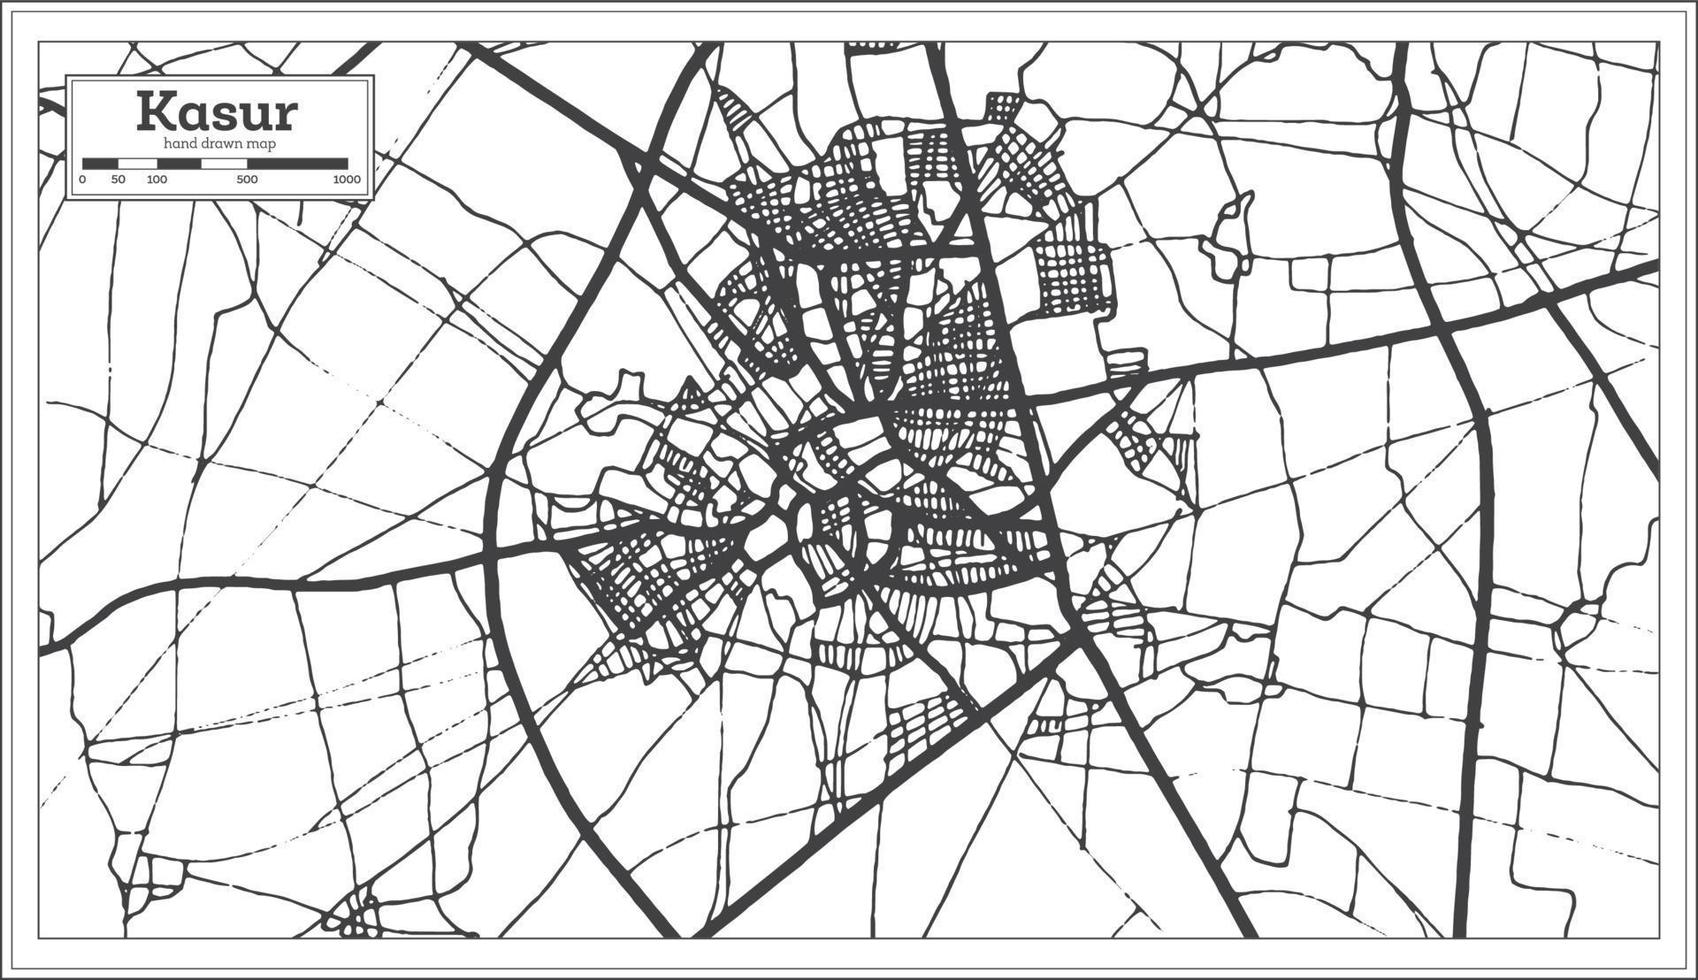 kasur pakistan stad Karta i svart och vit Färg. vektor illustration.